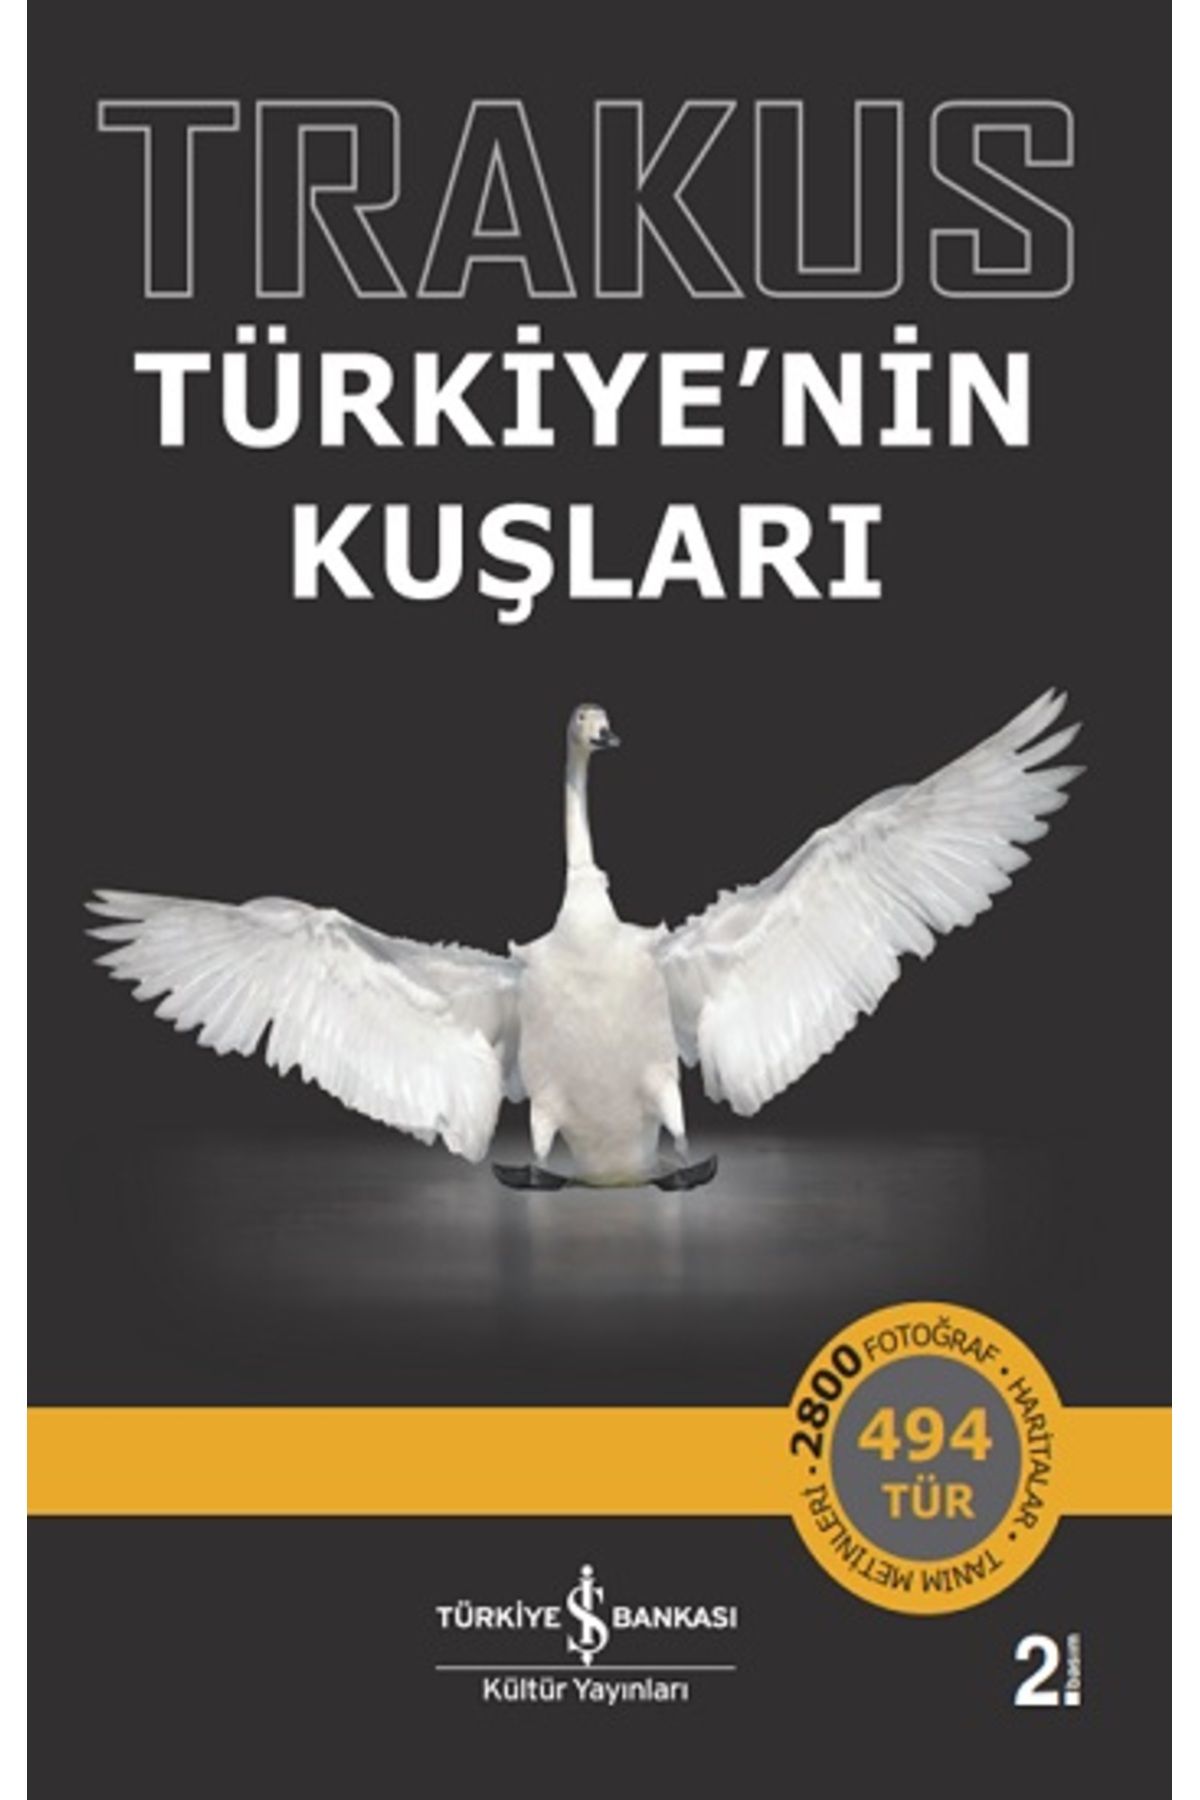 Türkiye İş Bankası Kültür Yayınları Trakus -türkiye’nin Kuşları /iş Kültür